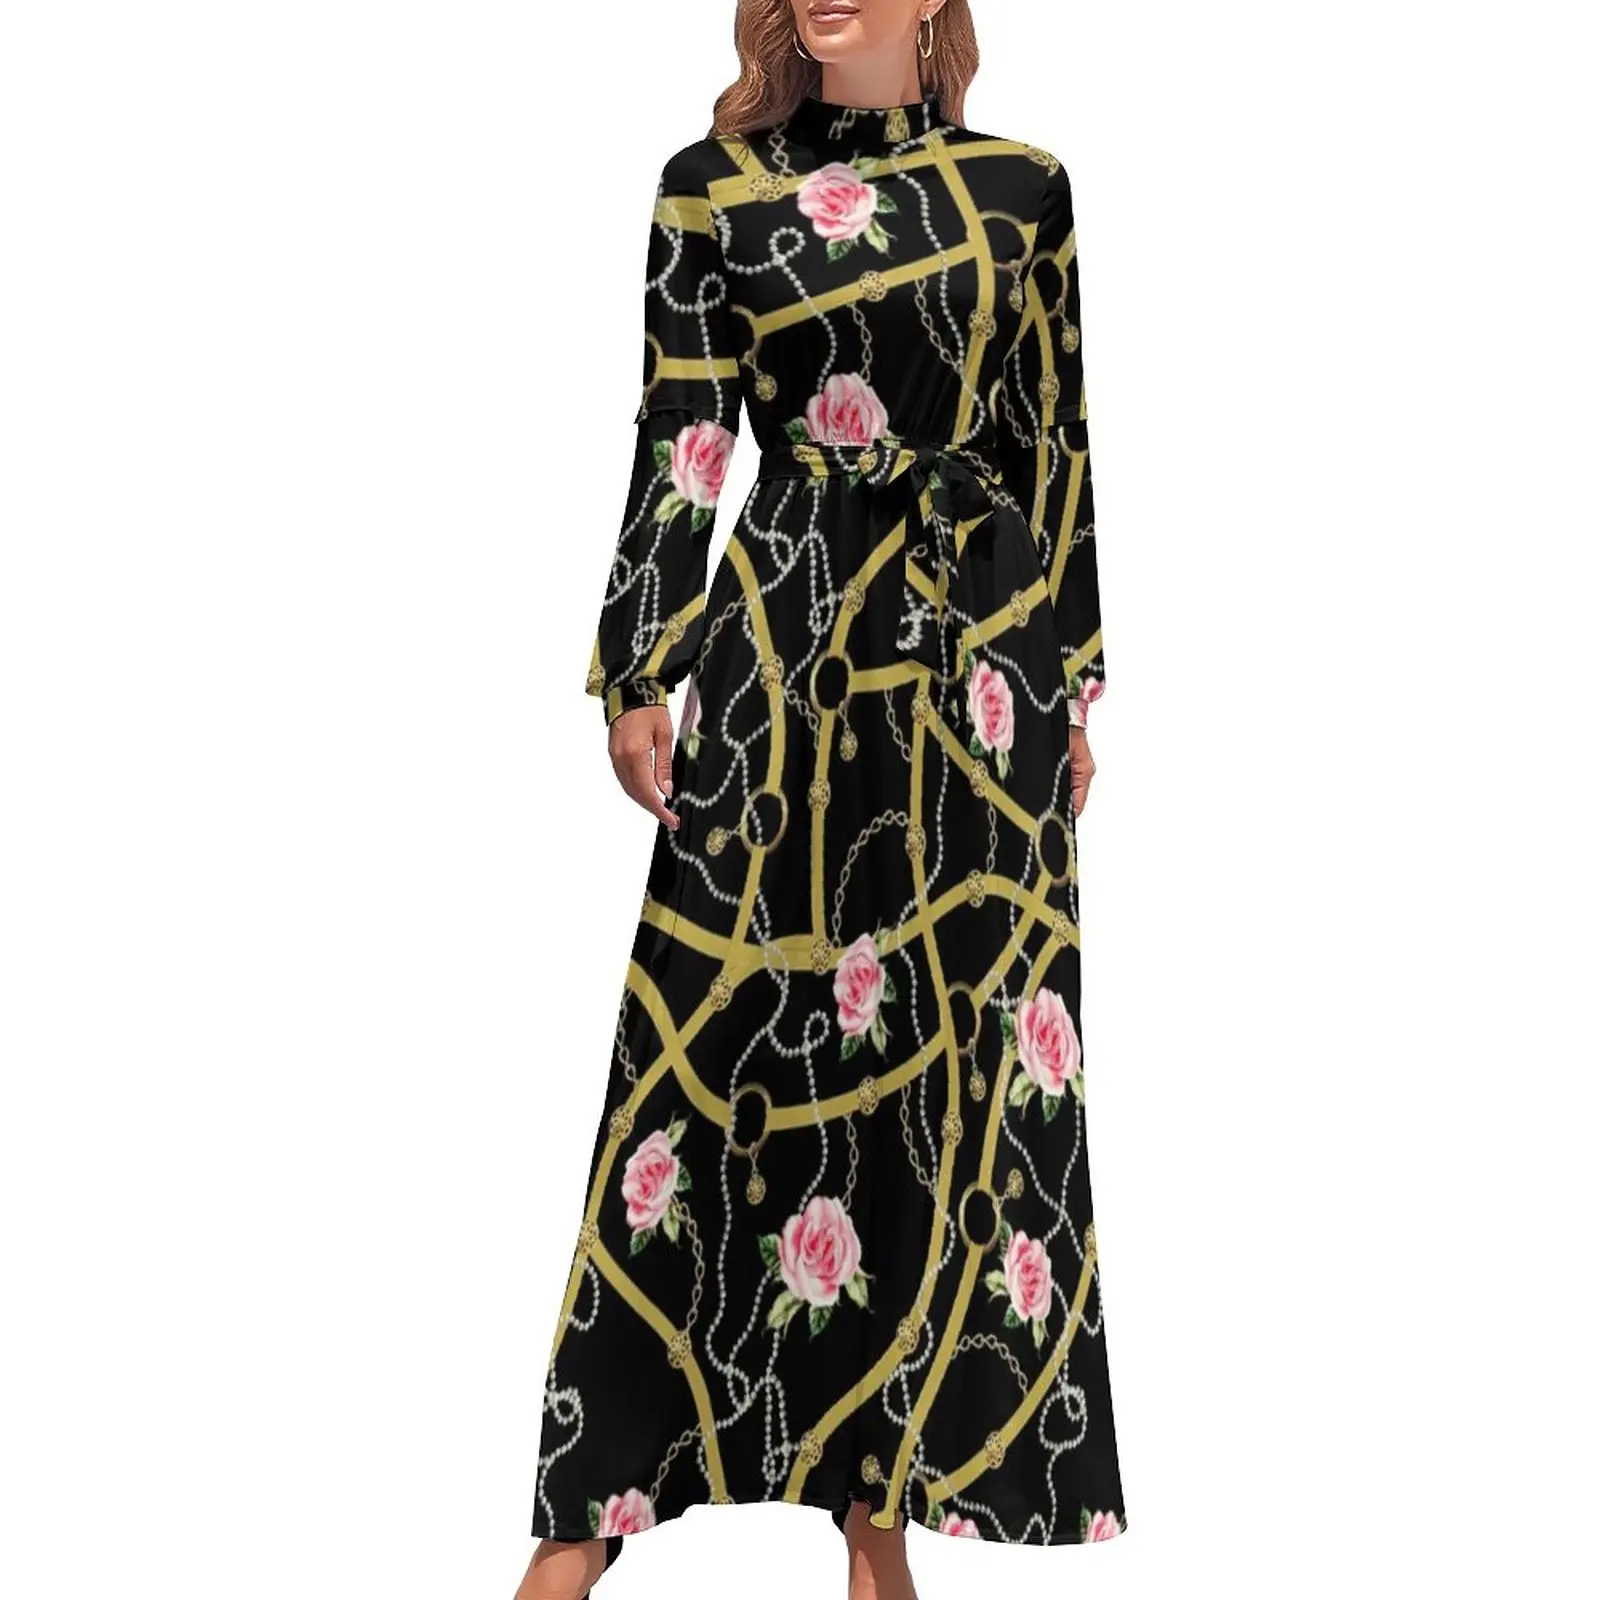 

Женское платье с длинным рукавом и принтом роз, современное Макси-платье с высокой талией, уличная одежда, индивидуальные пляжные длинные платья в стиле бохо, подарок